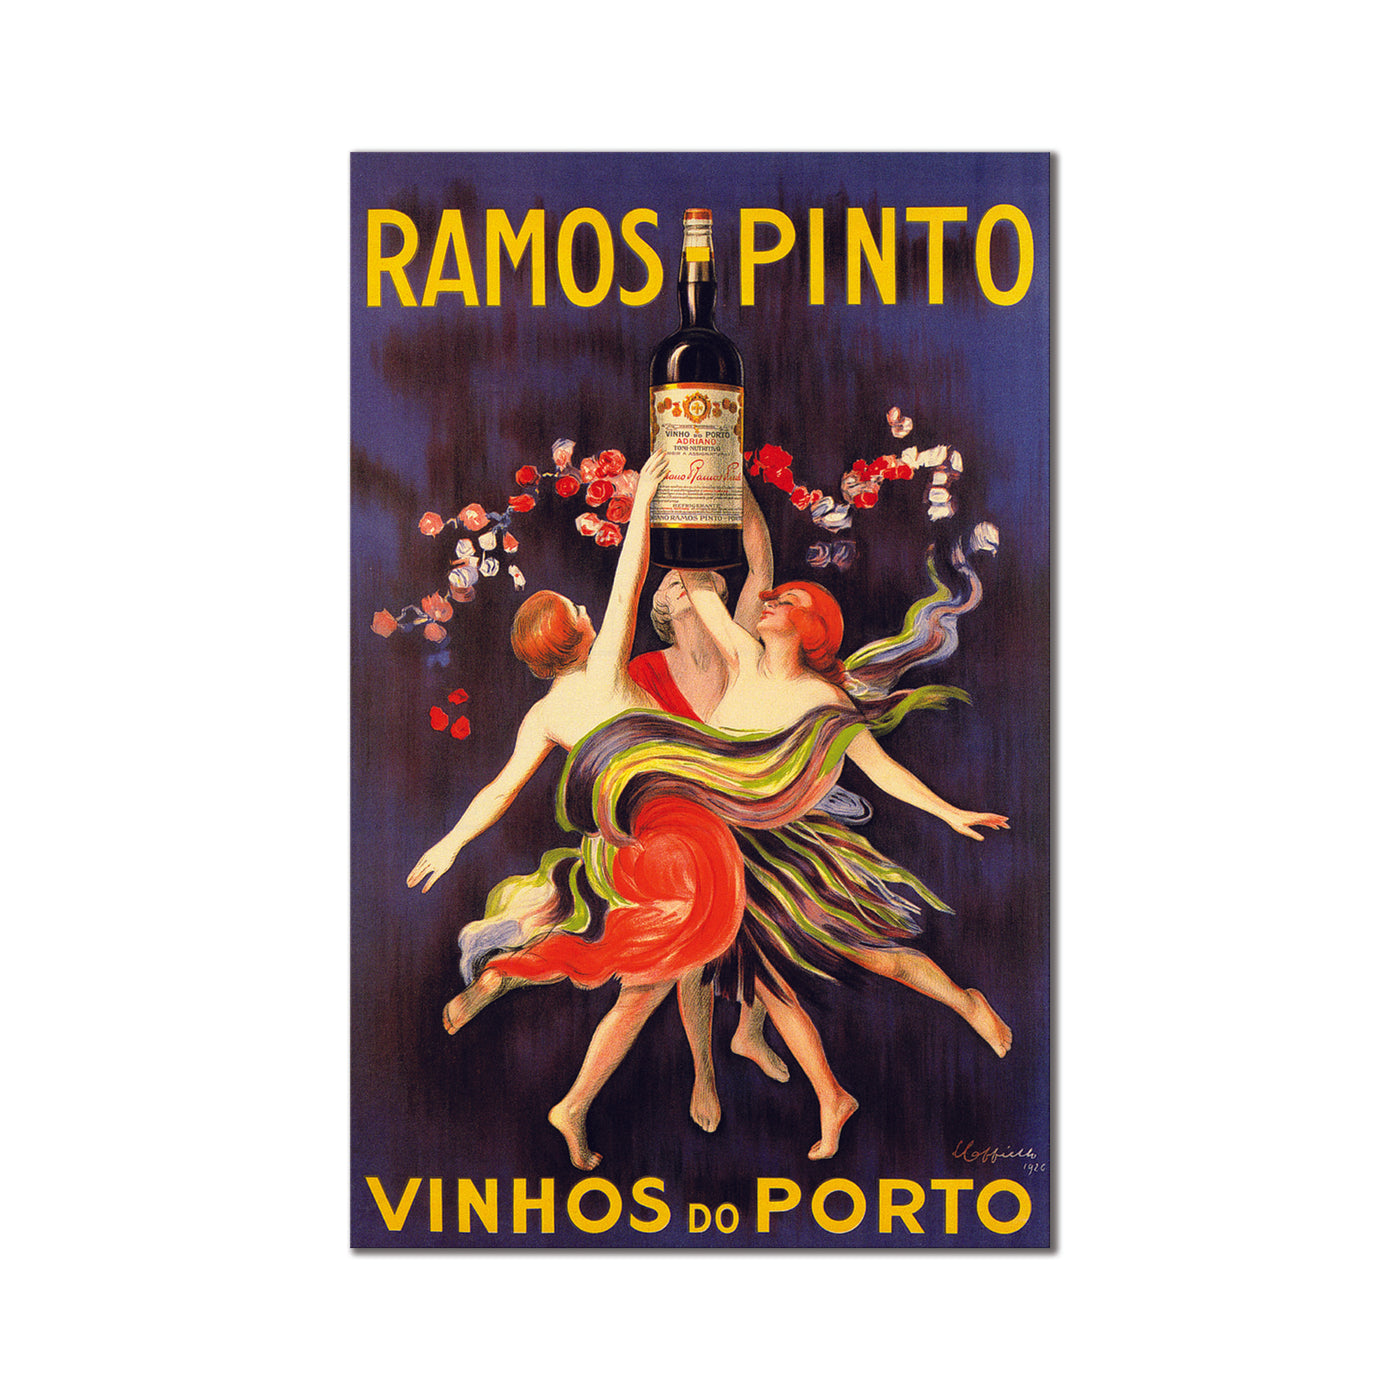 Ramos Pinto Vinhos do Porto